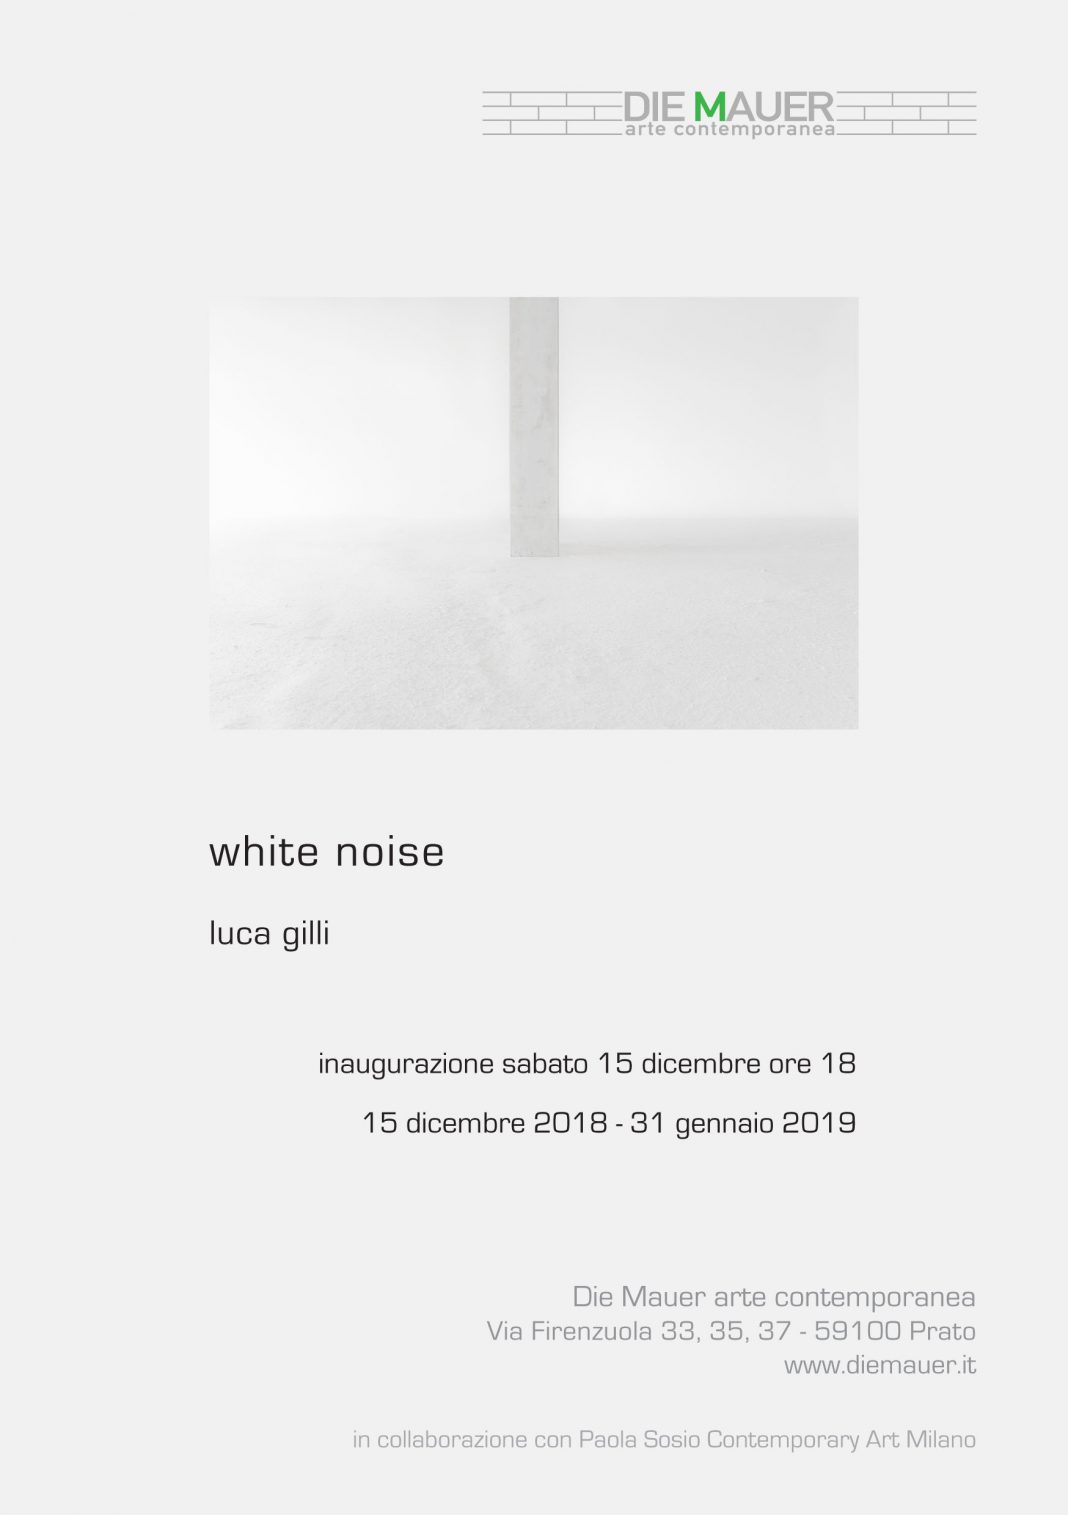 Luca Gilli – White noisehttps://www.exibart.com/repository/media/eventi/2018/12/luca-gilli-8211-white-noise-2-1068x1515.jpg